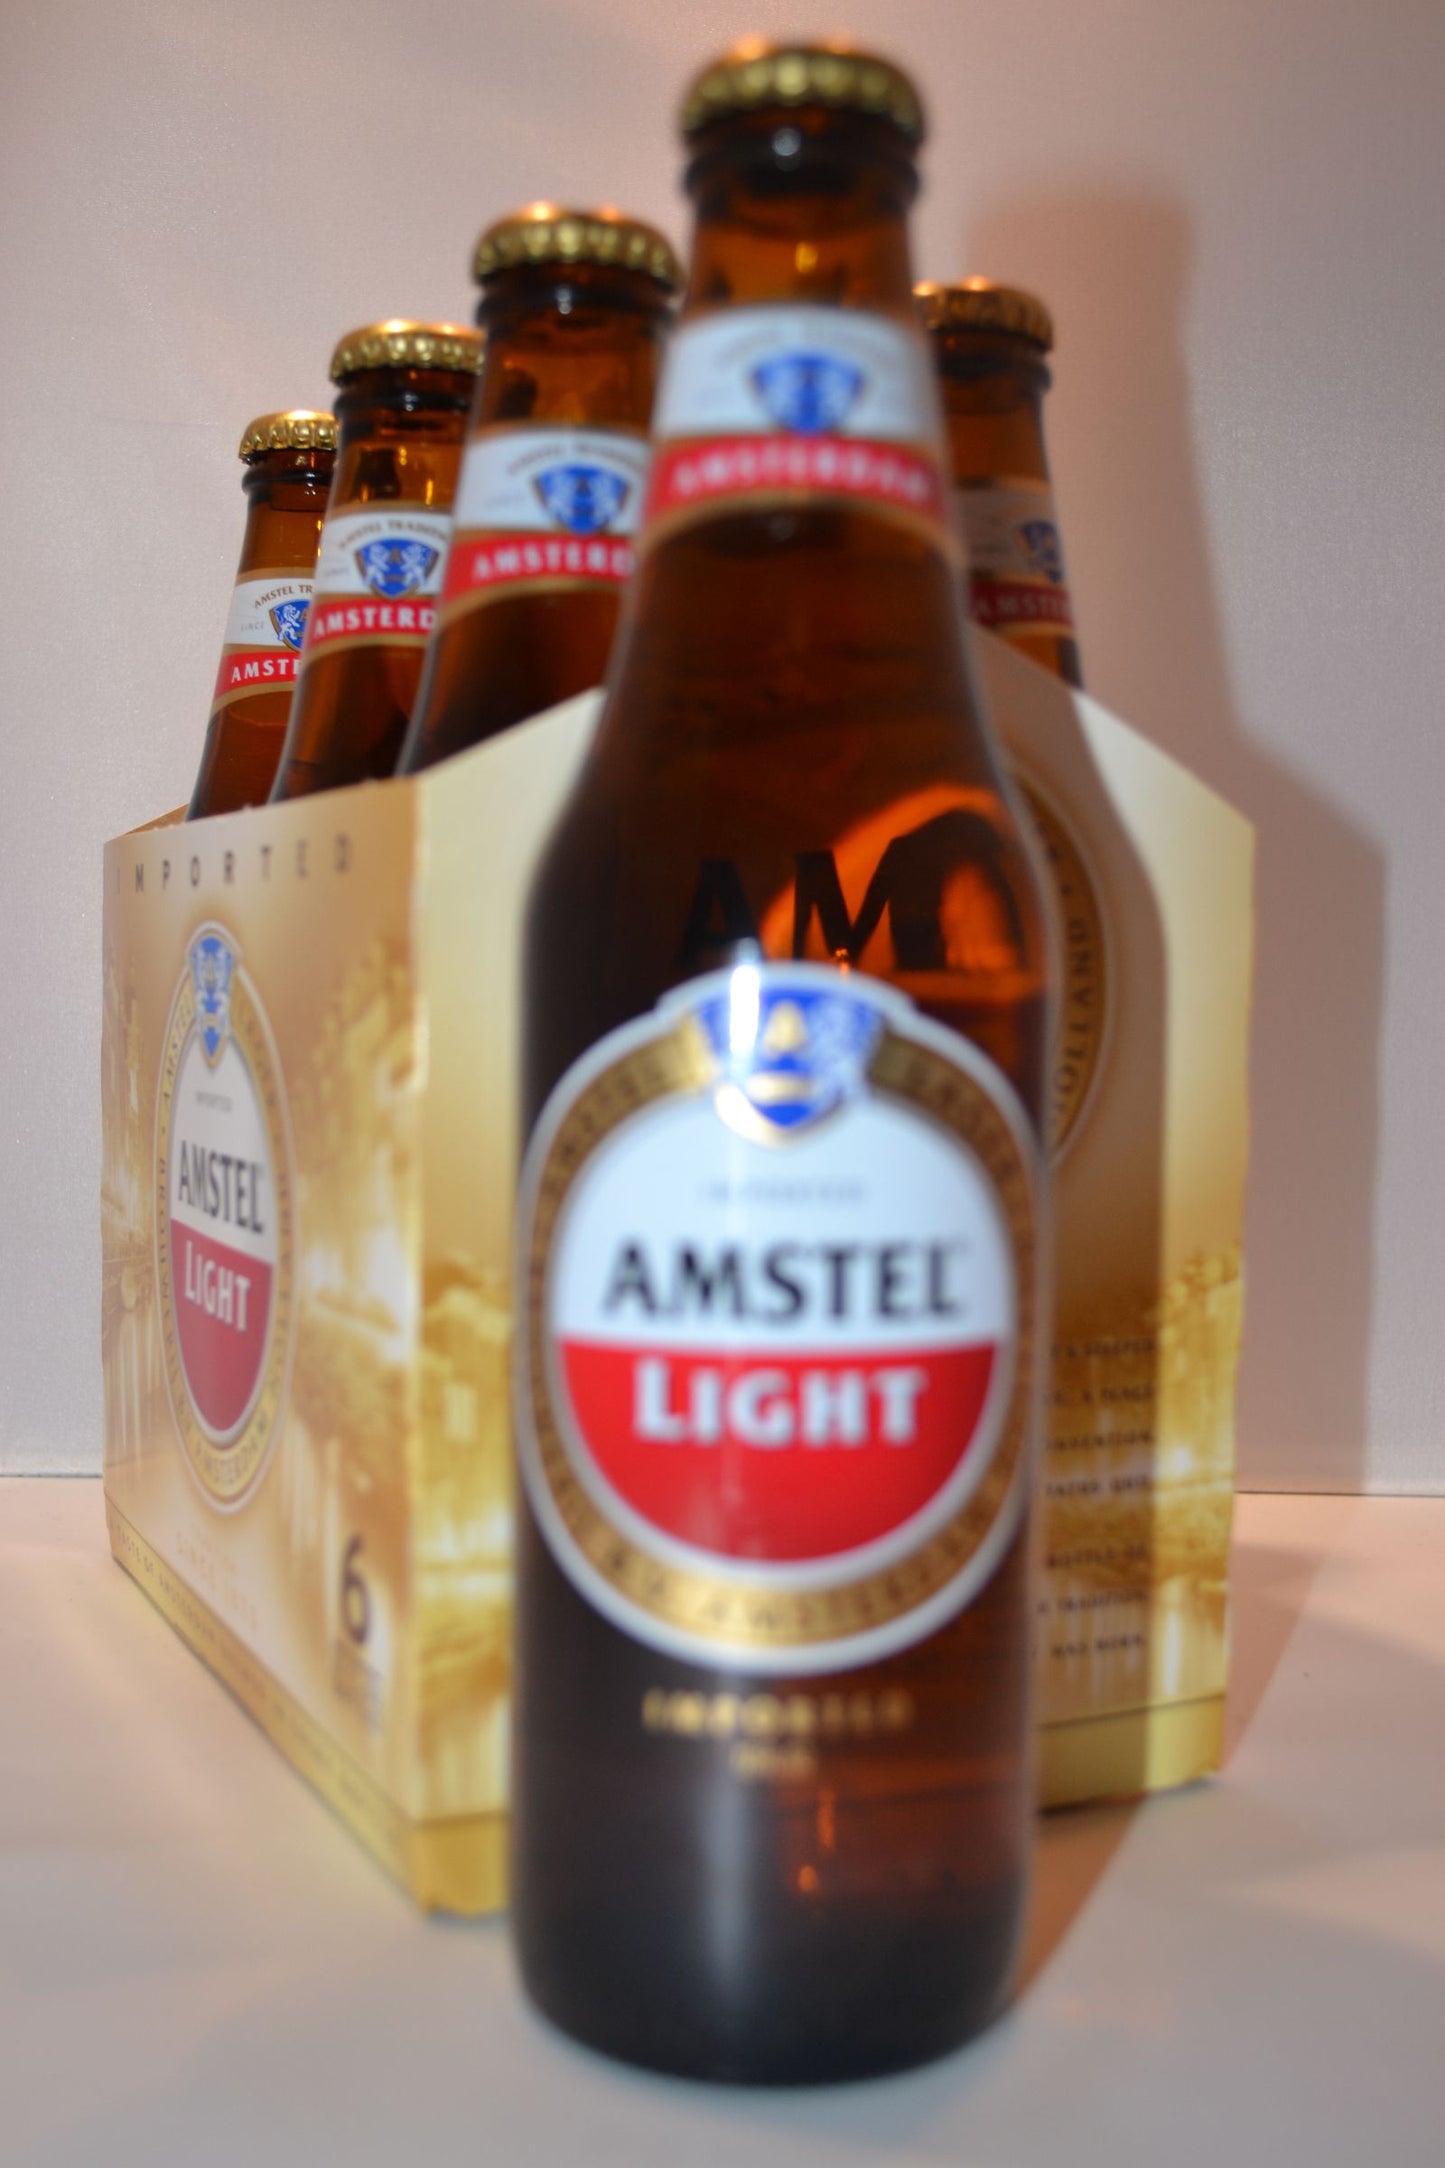 AMSTEL LIGHT 6X12 BOTTLE - Remedy Liquor